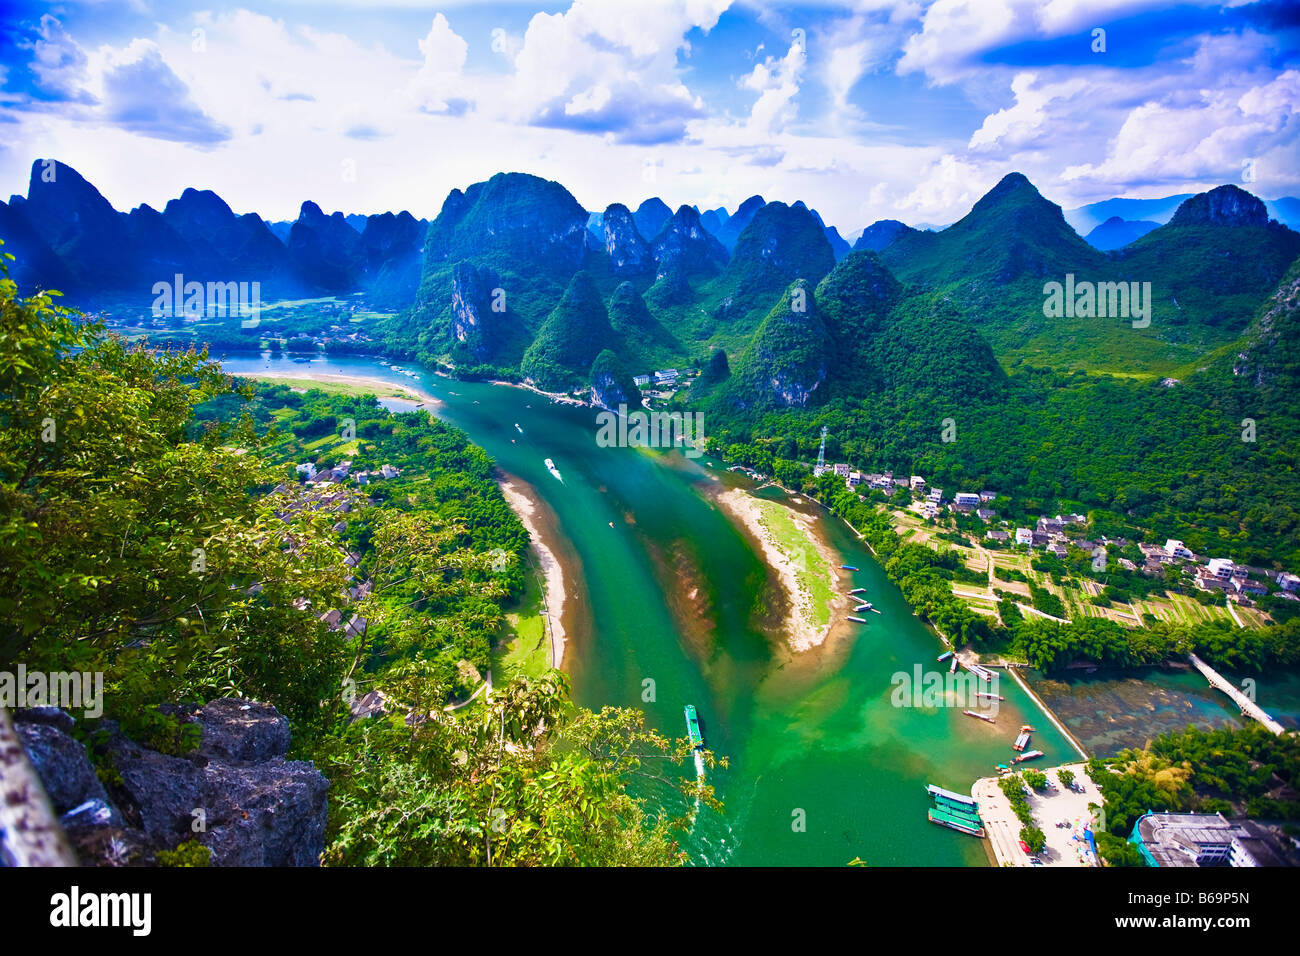 Aerial view of a river, Li River, XingPing, Yangshuo, Guangxi Province, China Stock Photo